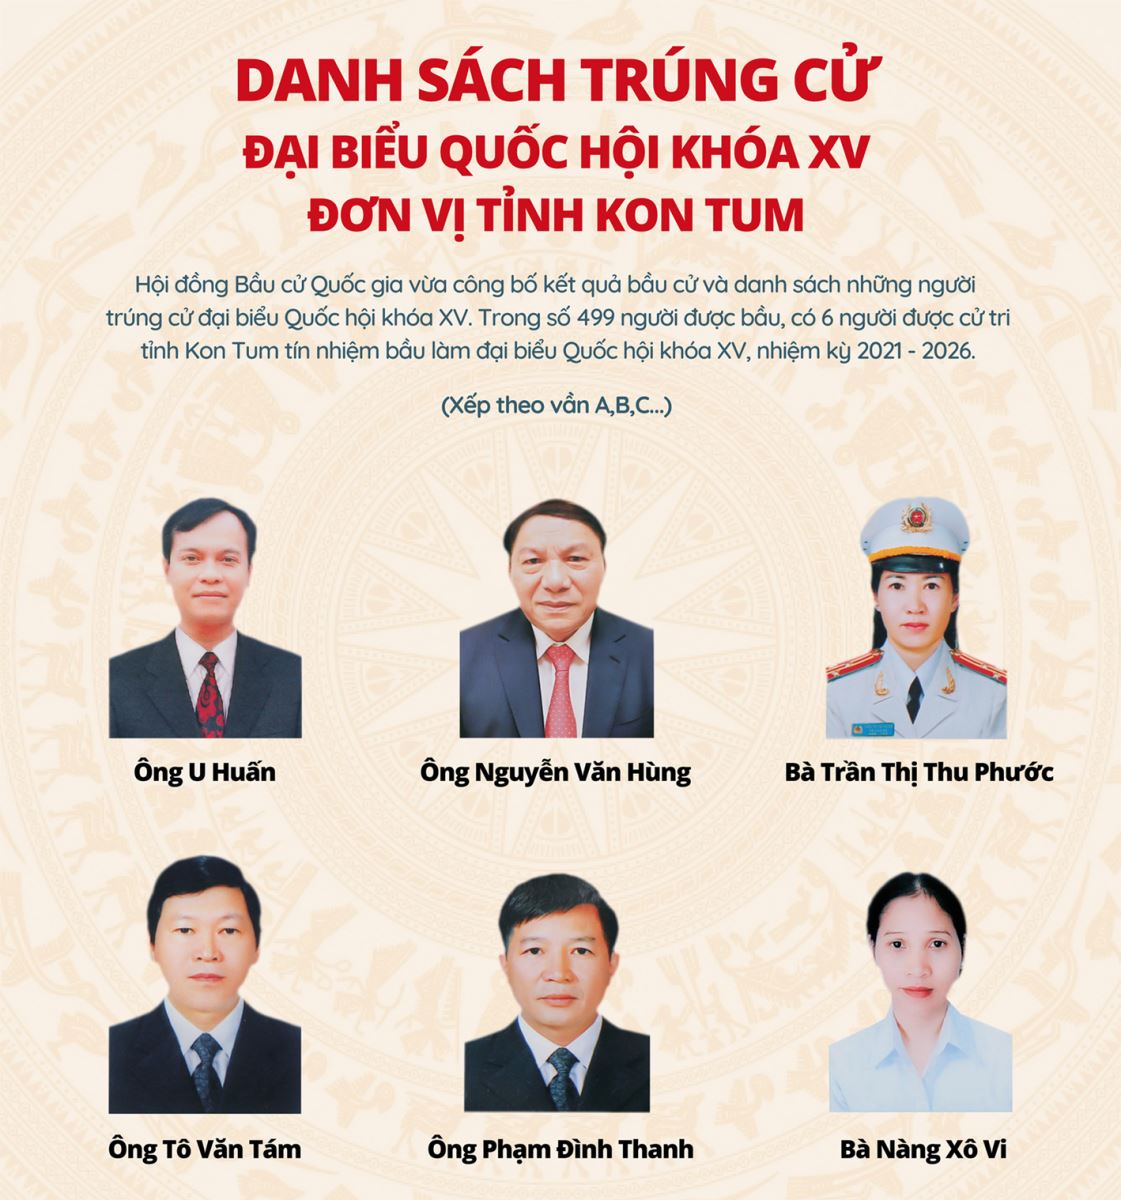 Danh sách trúng cử ĐBQH khóa XV (đơn vị tỉnh Kon Tum)